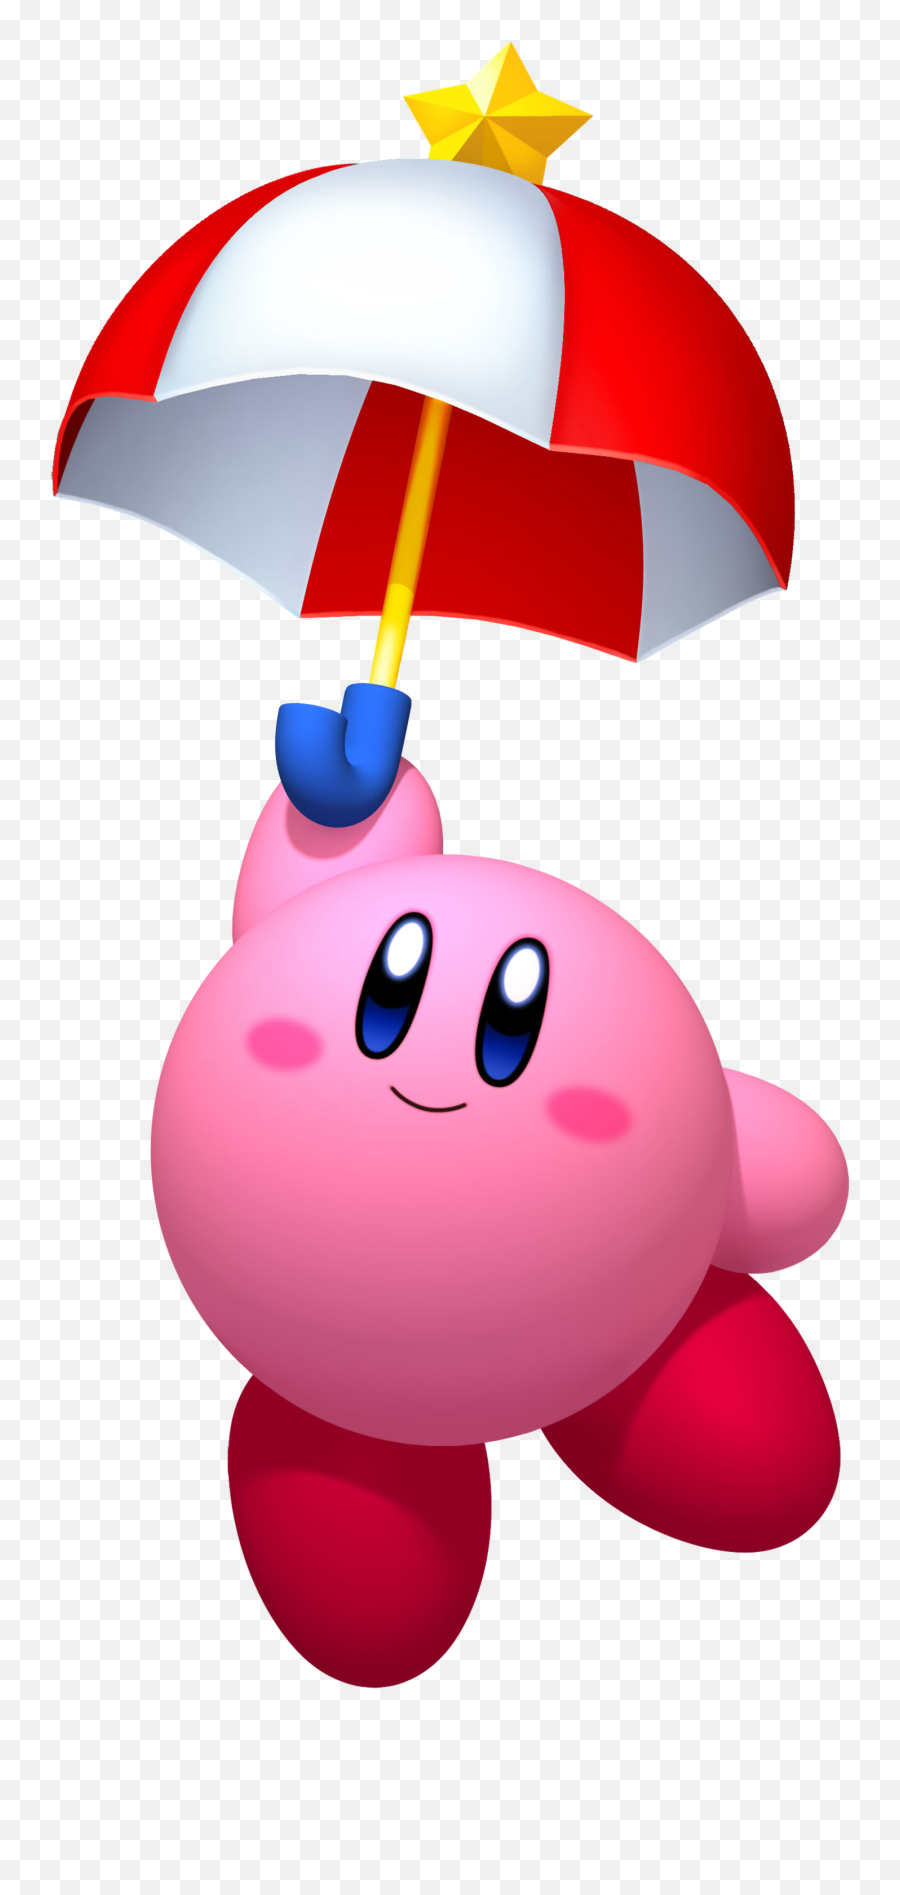 Random Happy Pink Smiling Kirby Face - Random U0026 Forum Kirby Umbrella Emoji,Facebook Sweatdrop Emoticon